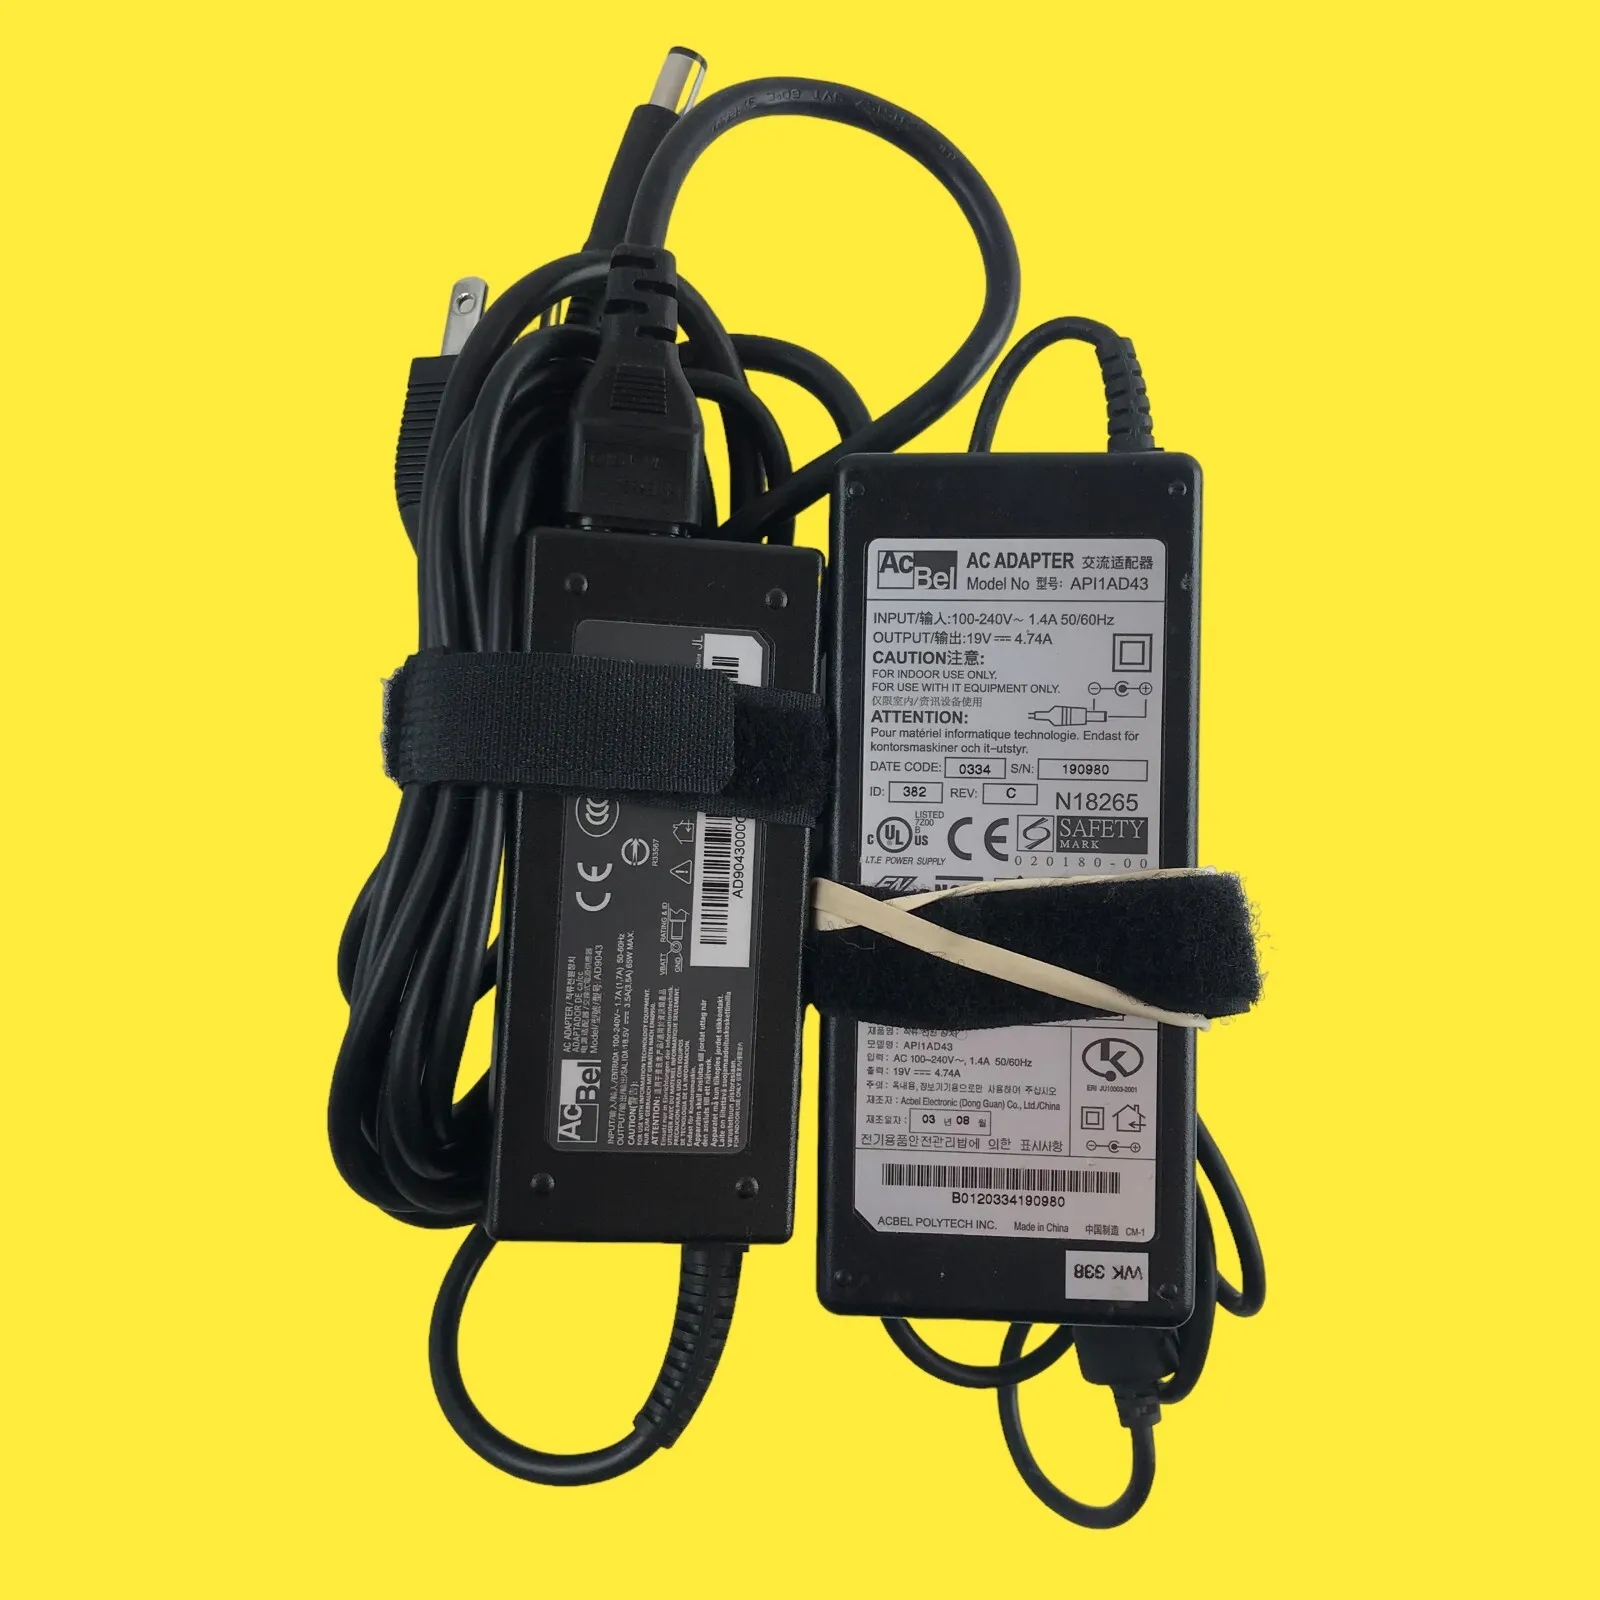 *Brand NEW* Original AcBel API1AD43 AD9043 19V 4.74V Notebook Ac Adapter Power Supply - Click Image to Close